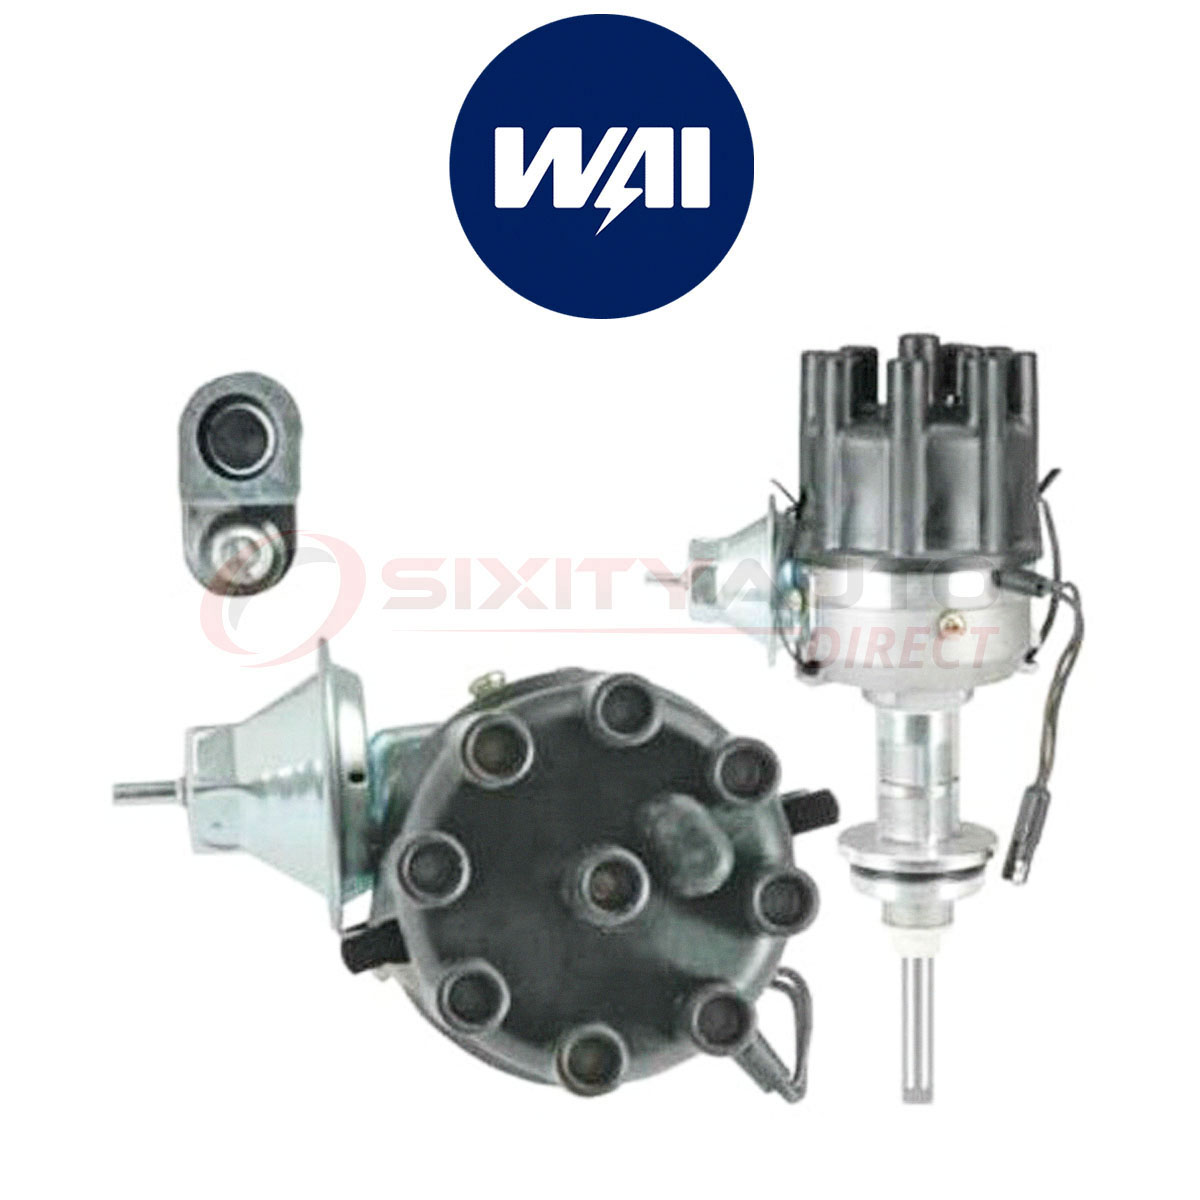 WAI World Power DST1829 Distributor for Spark Plug Ignition System ek